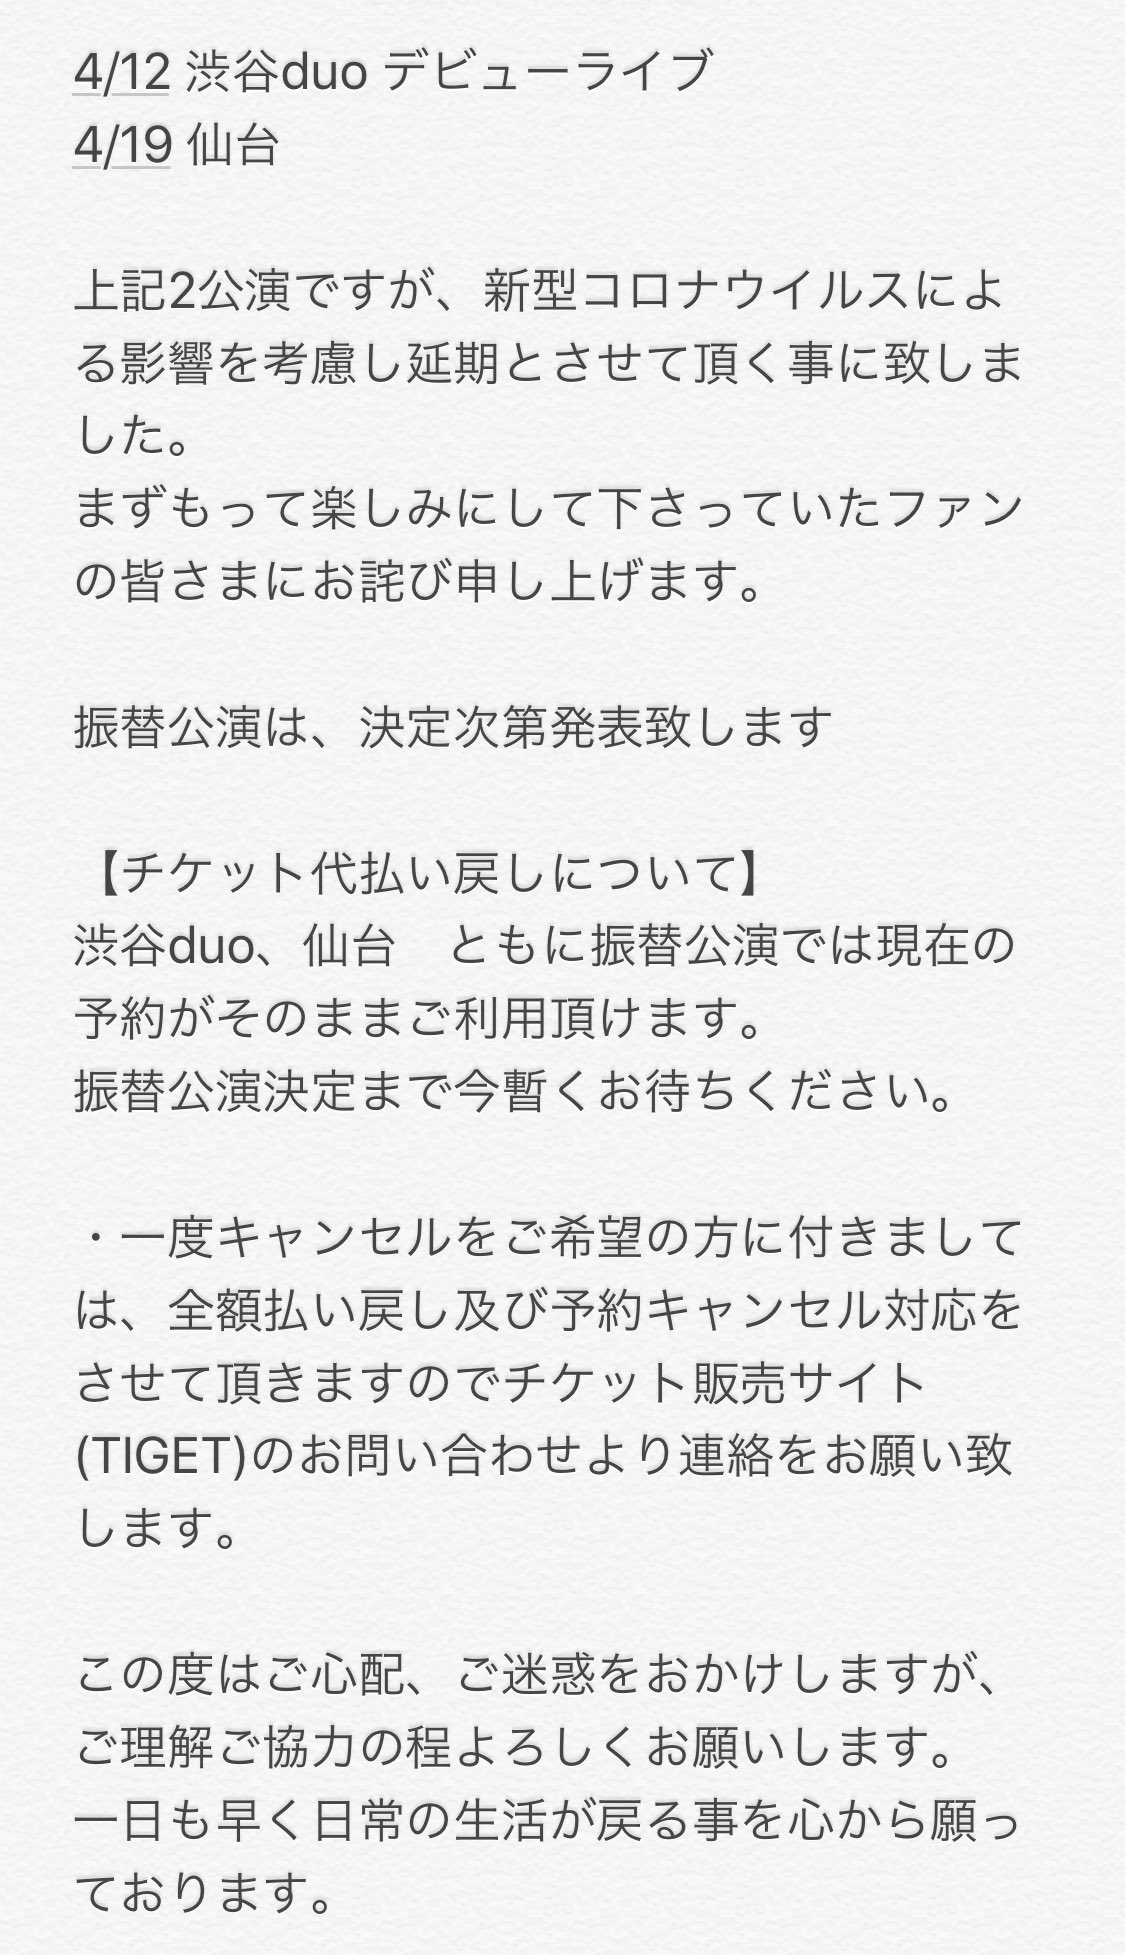 Schedule Duo Music Exchange 東京 渋谷